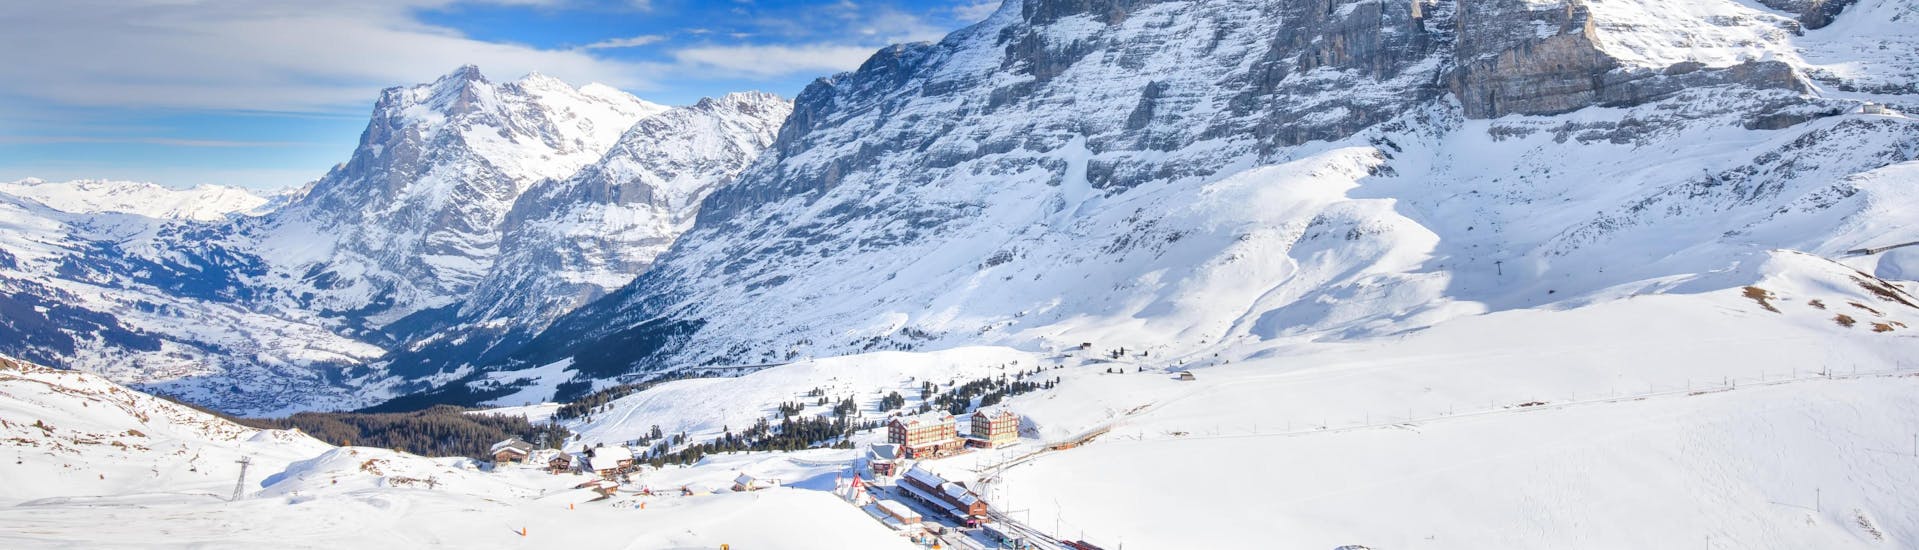 Vue sur les pistes enneigées de Grindelwald, dans la région de la Jungfrau, où de nombreuses écoles de ski proposent leurs cours de ski.